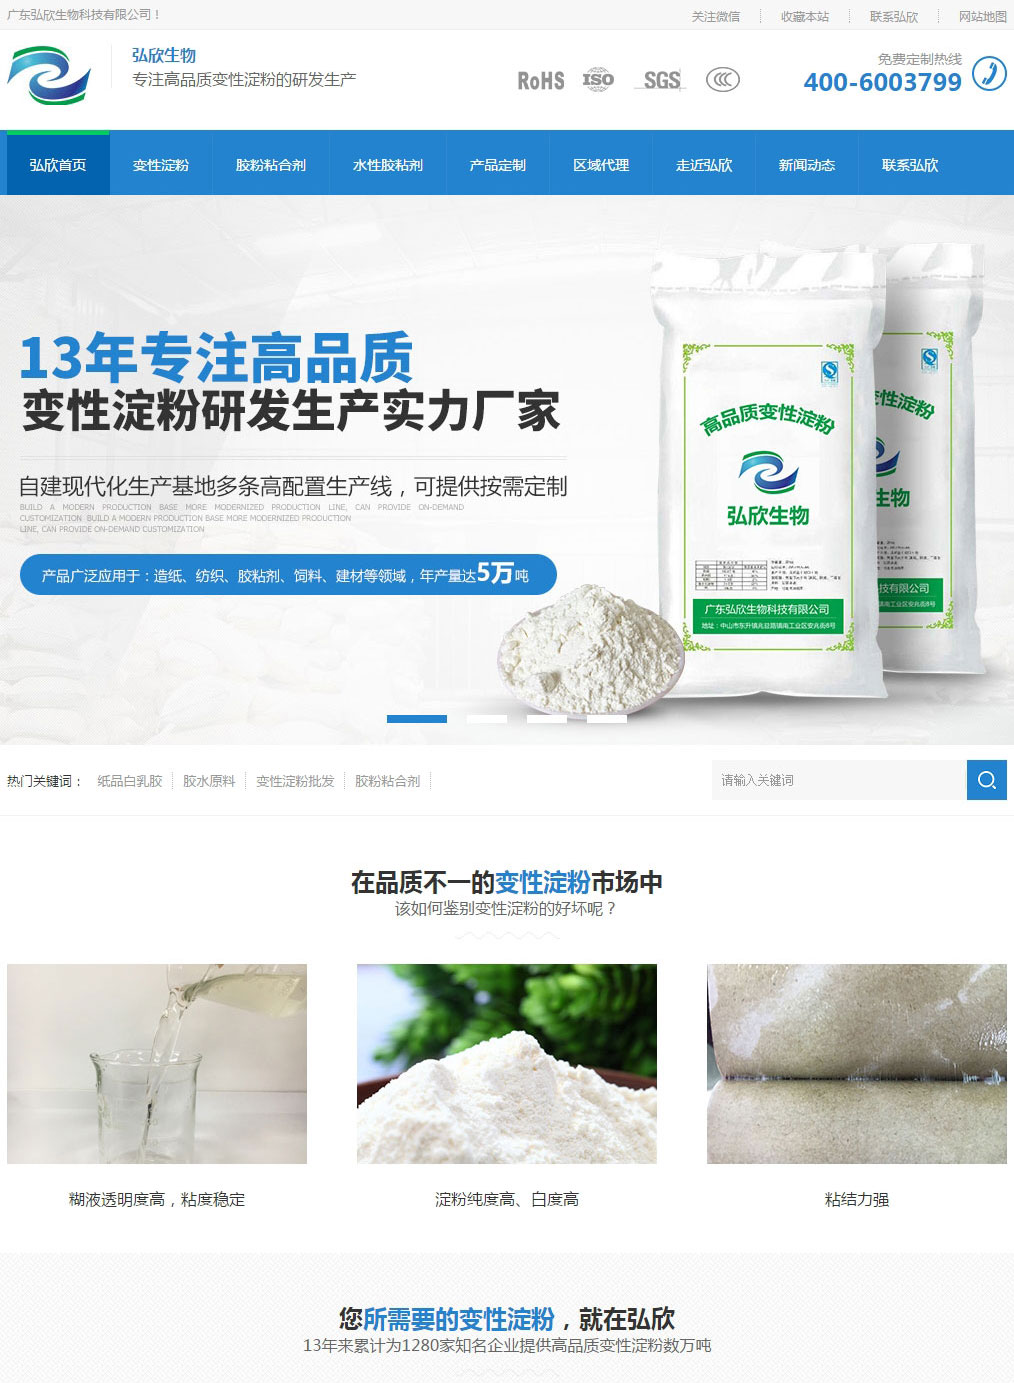 中山弘欣生物变性淀粉营销网站建设案例